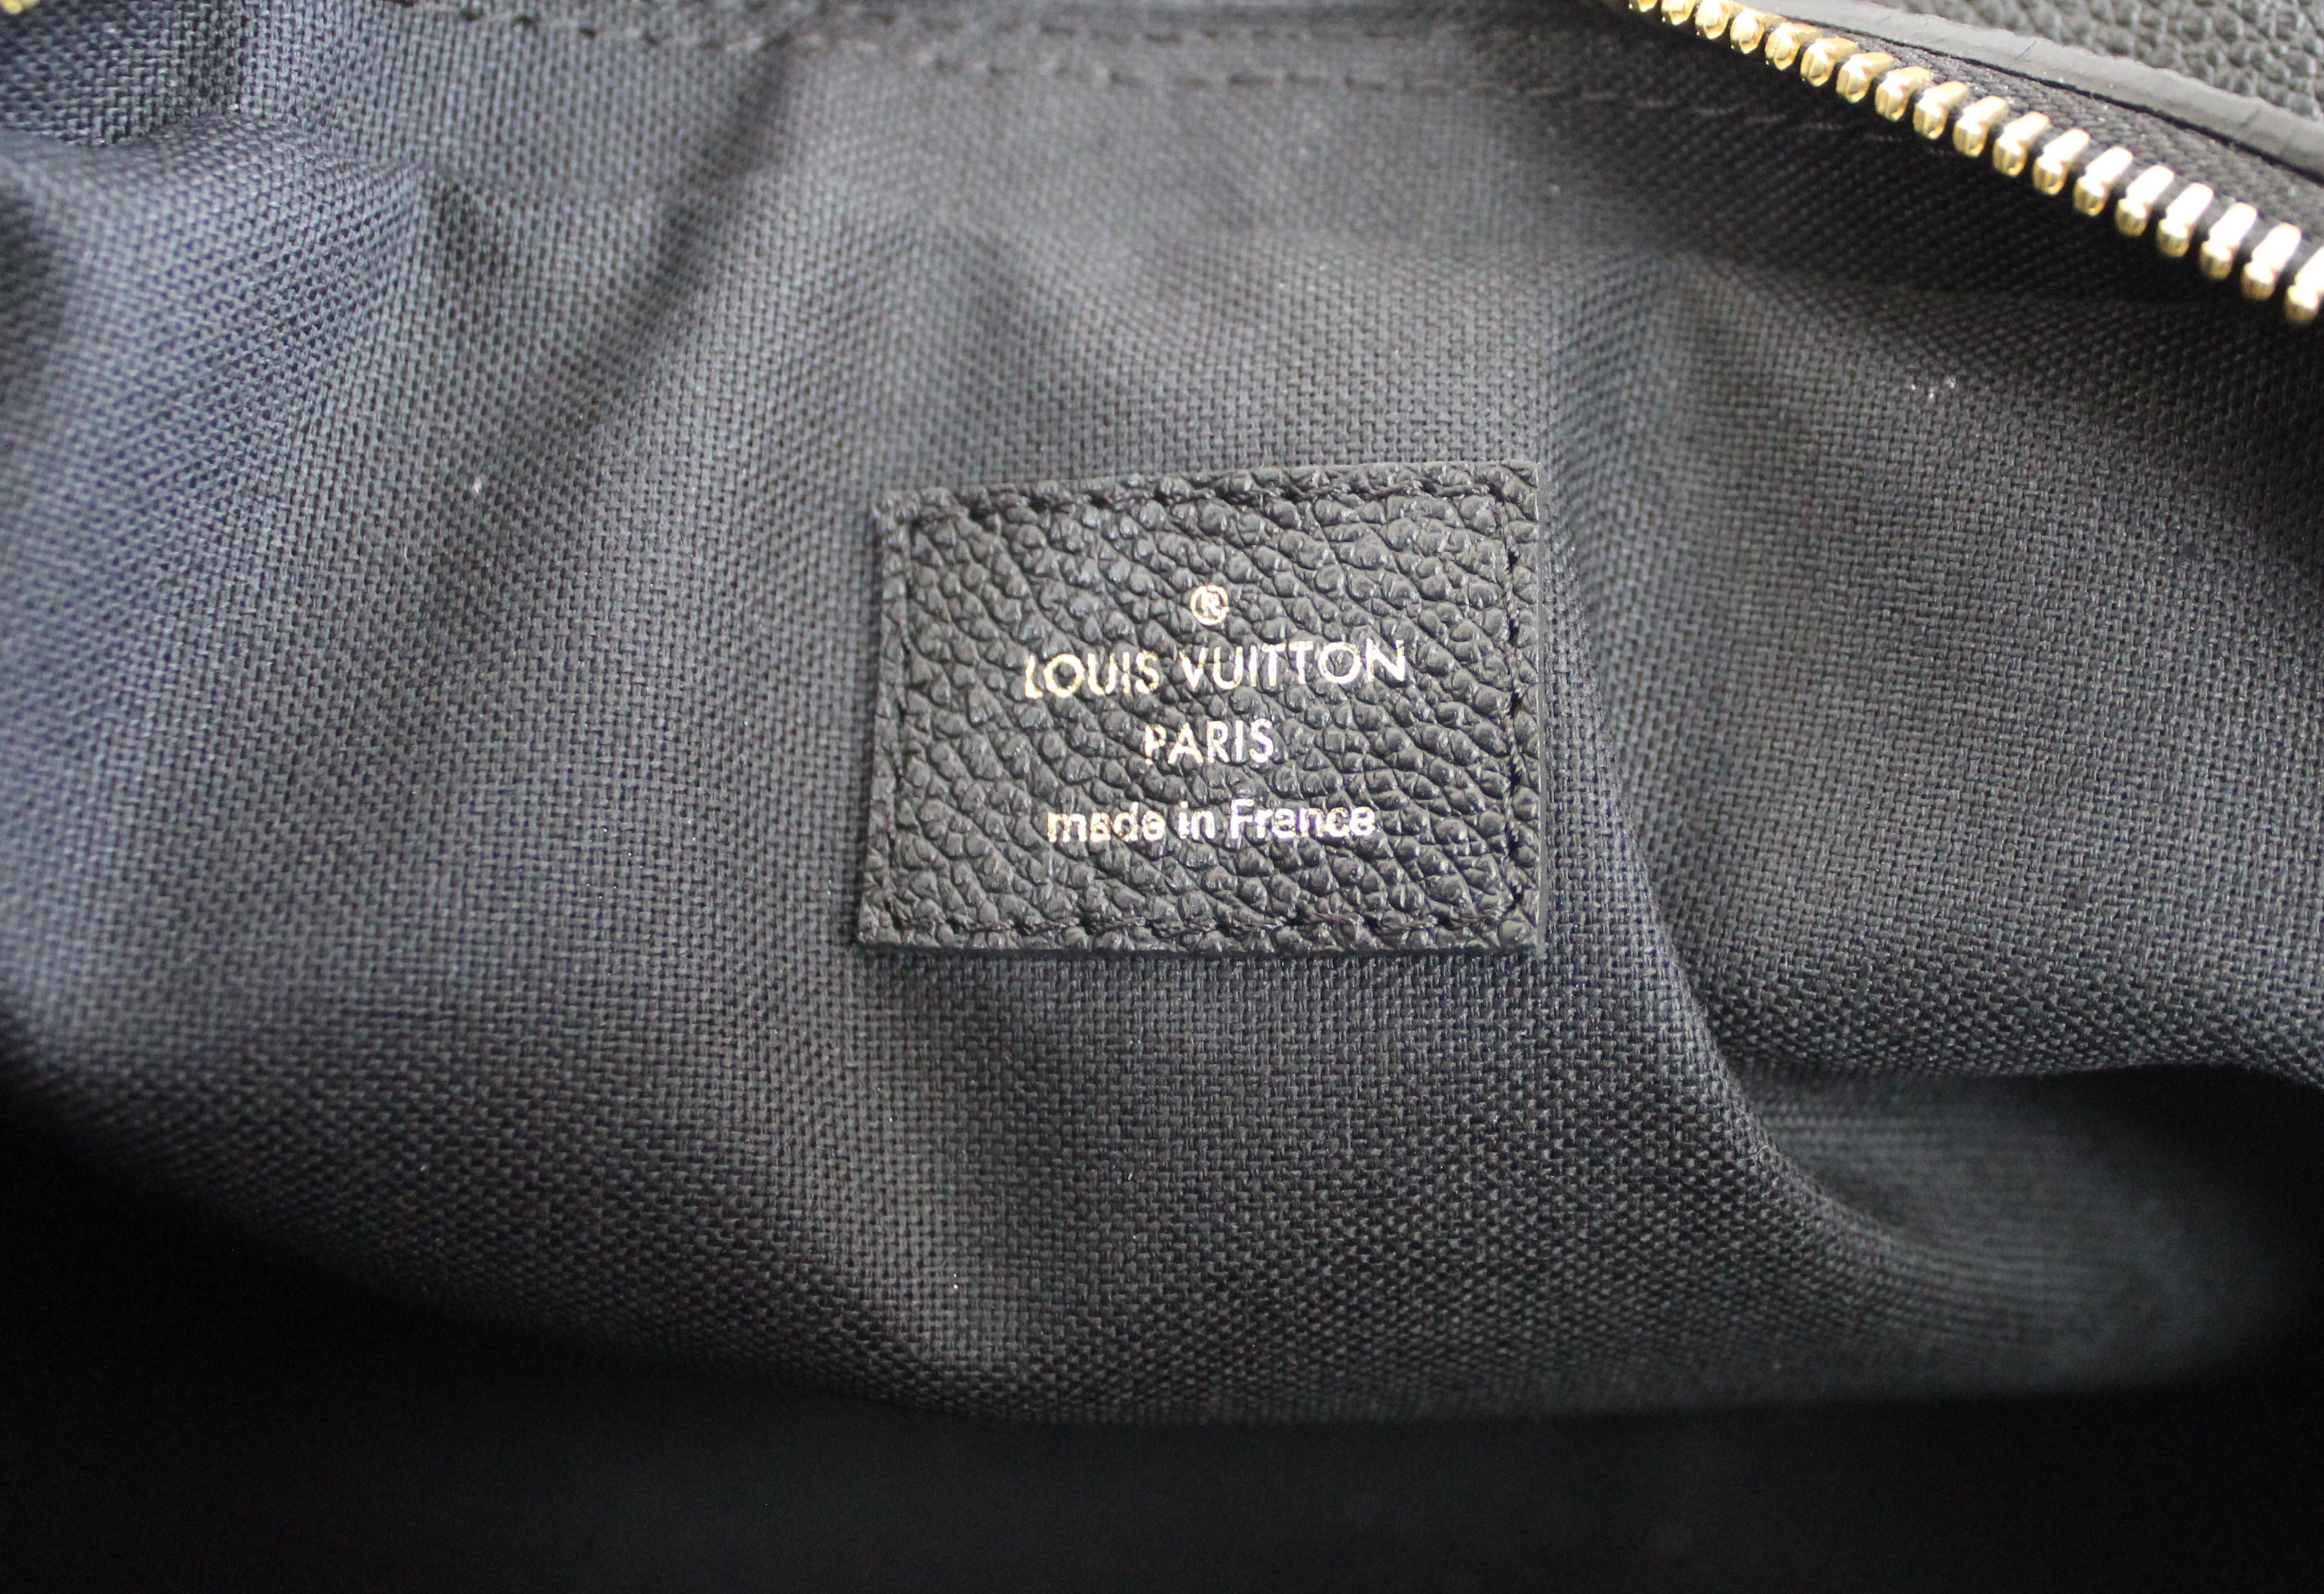 Authentic Louis Vuitton Black Empreinte Leather Vosges MM Handbag